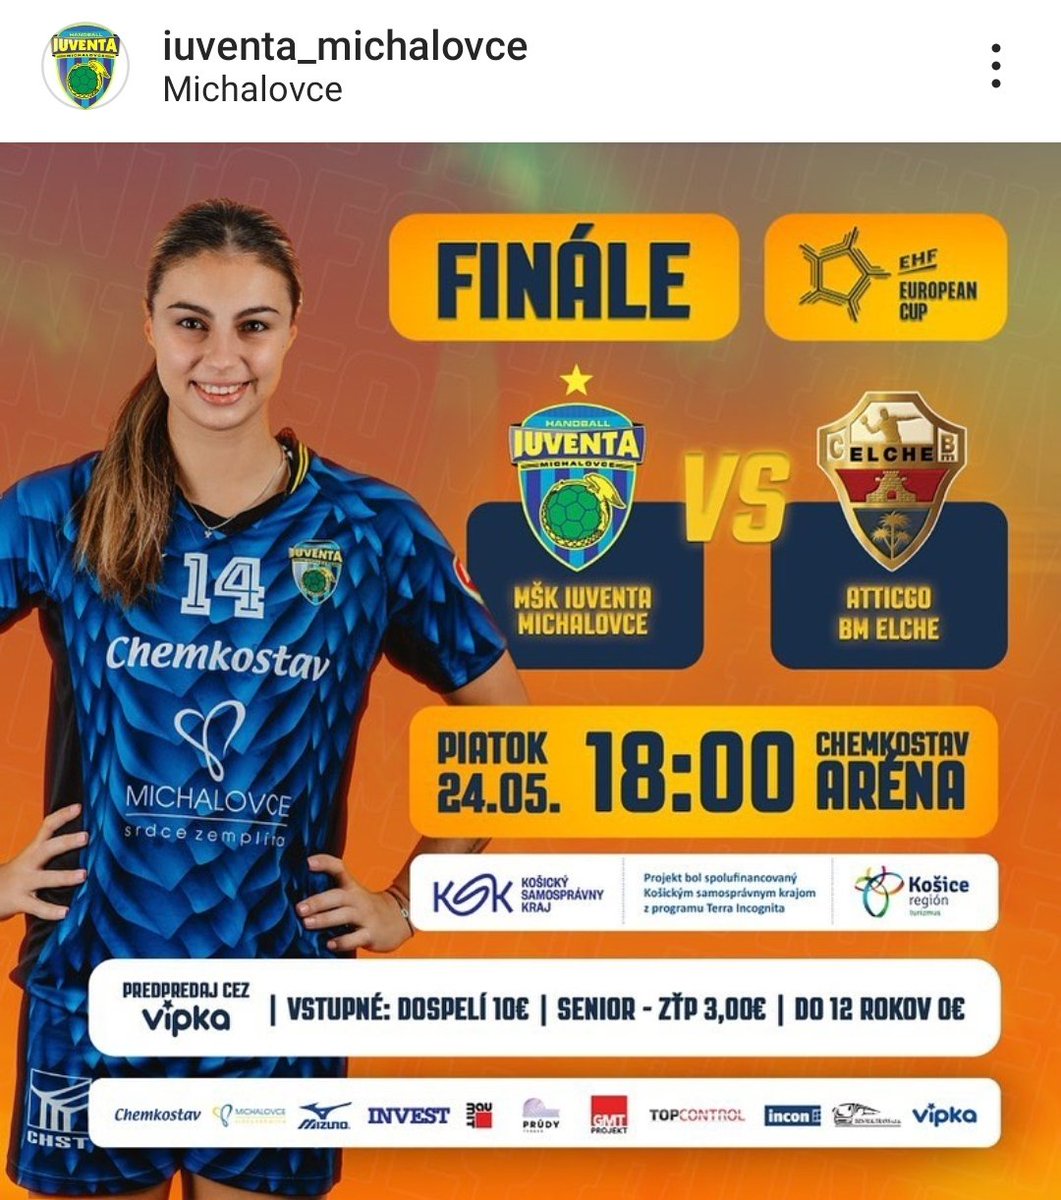 #EHFEuropeanCup
🇸🇰 El Iuventa Michalovce ha puesto esta mañana, a la venta, las entradas del partido de vuelta de la final contra el #Atticgo @cbm_elche.